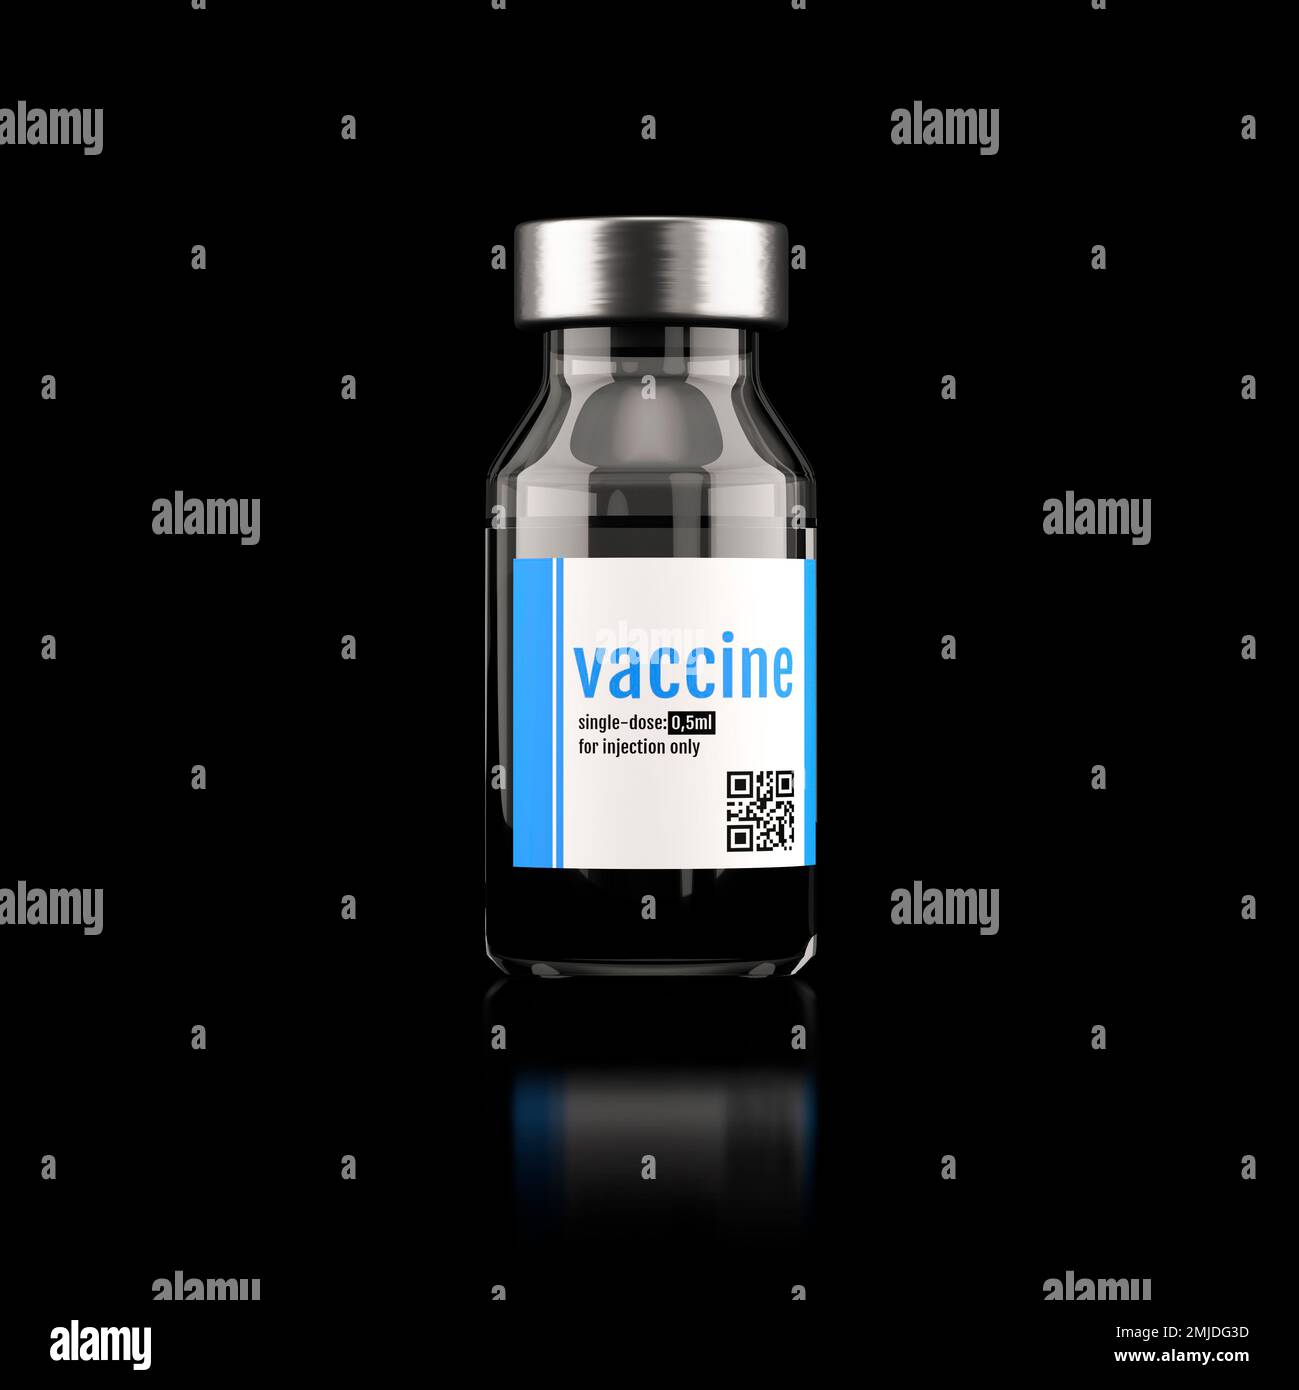 Vaccine, conceptual illustration Stock Photo